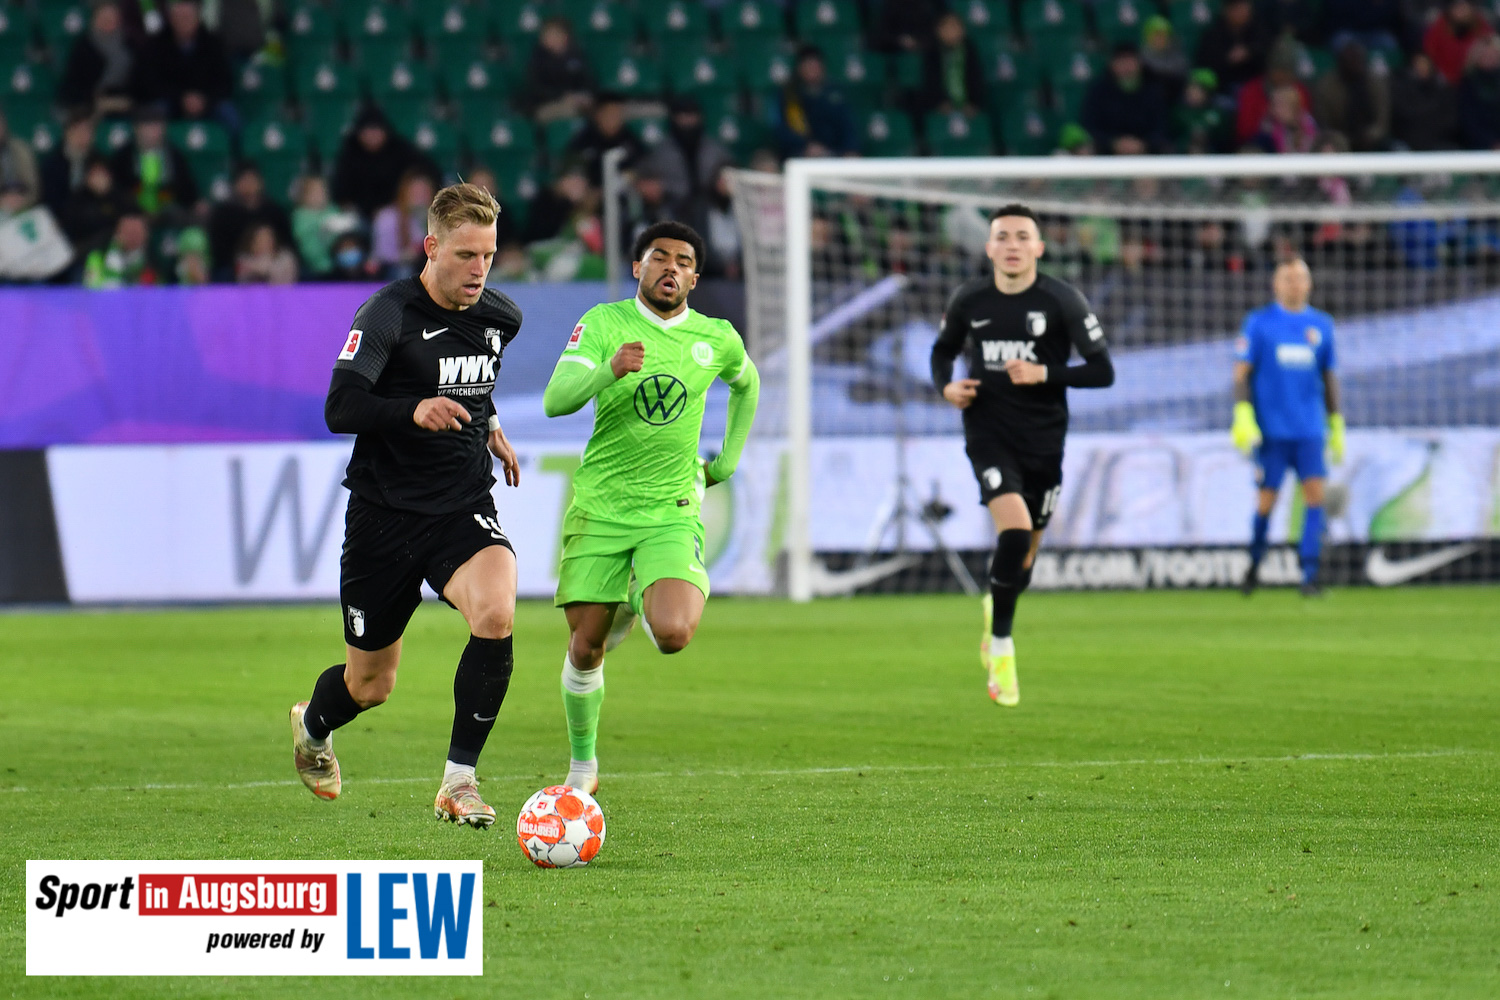 VfL Wolfsburg - FCA 06.11.21 - 32